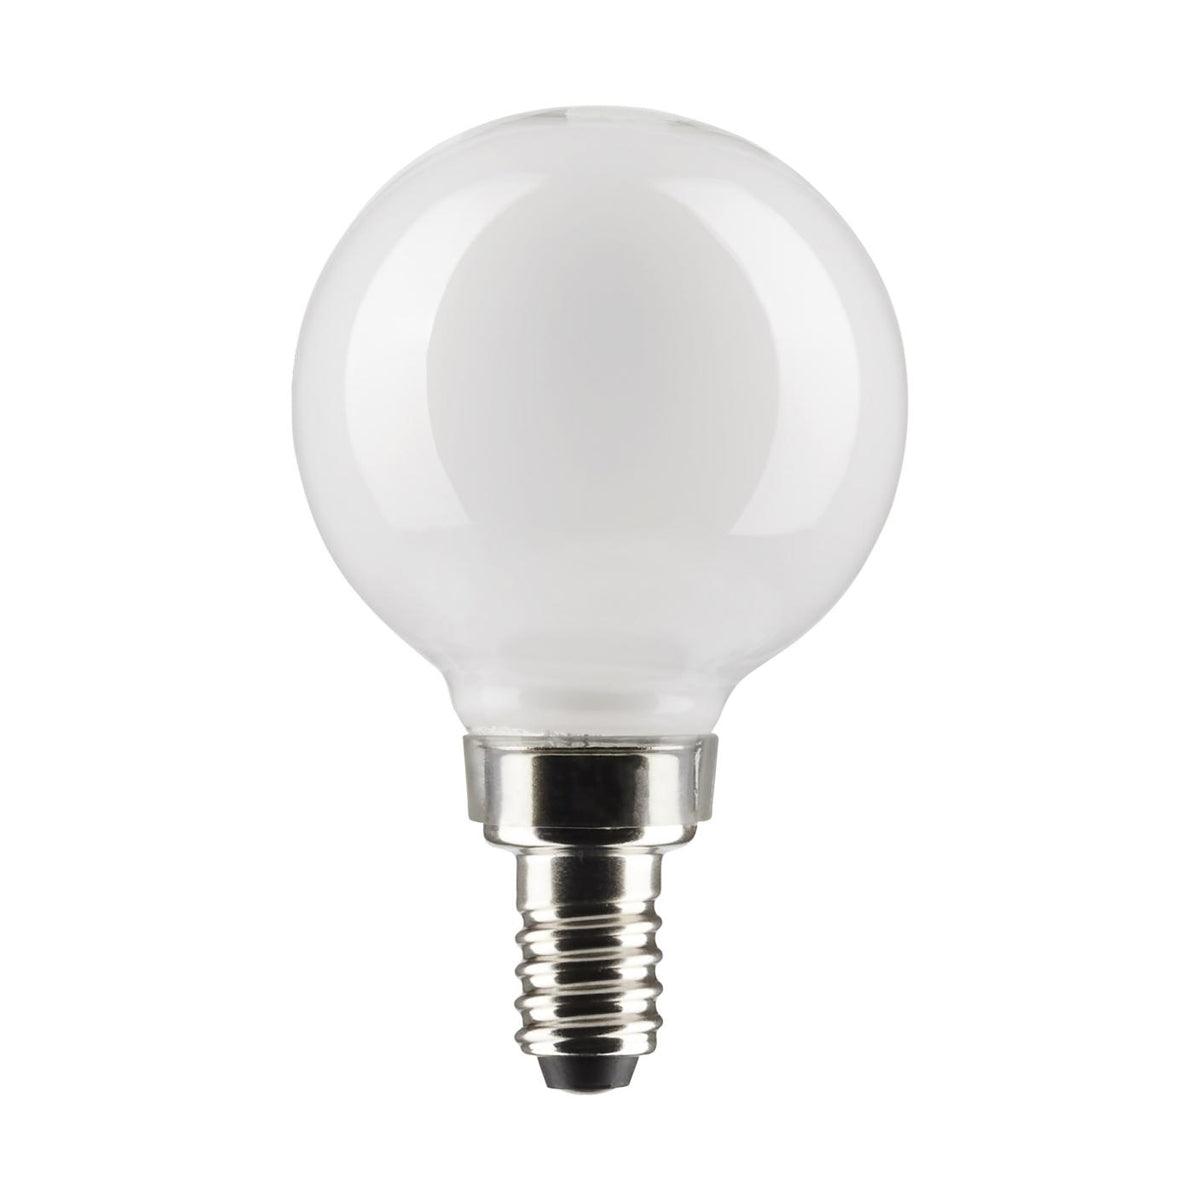 G16.5 Filament LED Globe Bulb, 6 Watt, 500 Lumens, 2700K, E12 Candelabra Base, Frosted Finish, Pack Of 2 - Bees Lighting